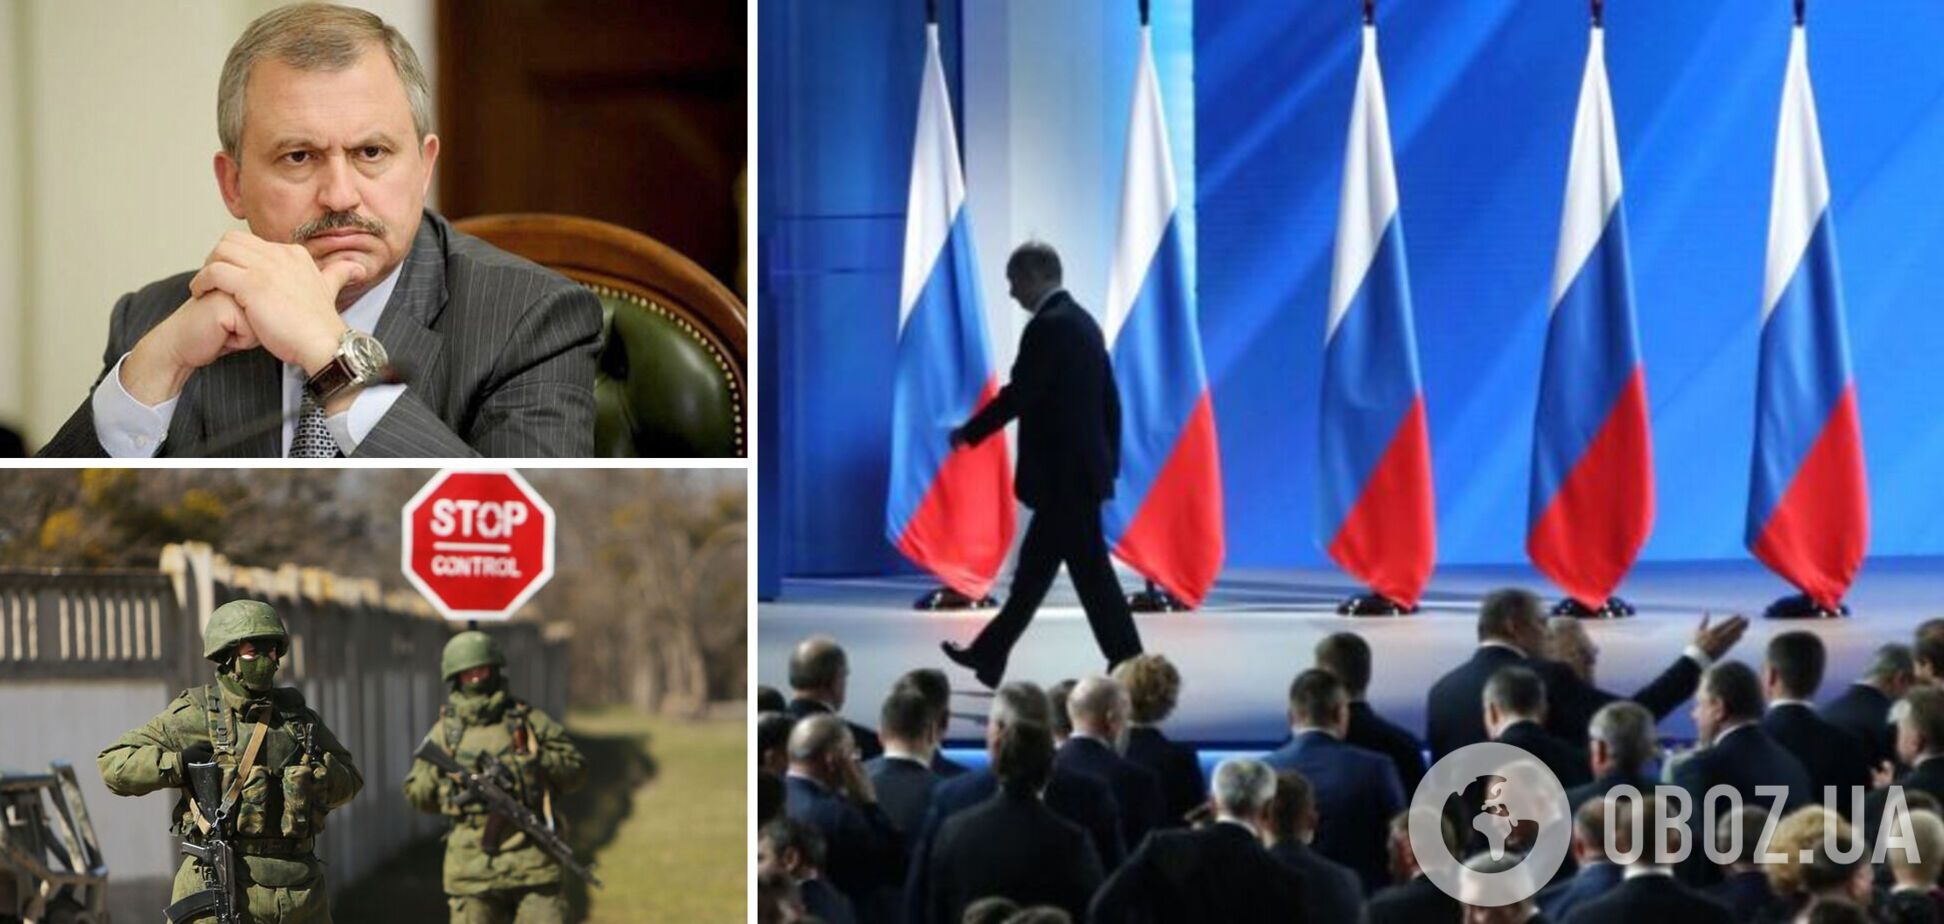 Сенченко: когда Путин уйдет, Украина потребует репарации за войну и возвращение Крыма. Интервью